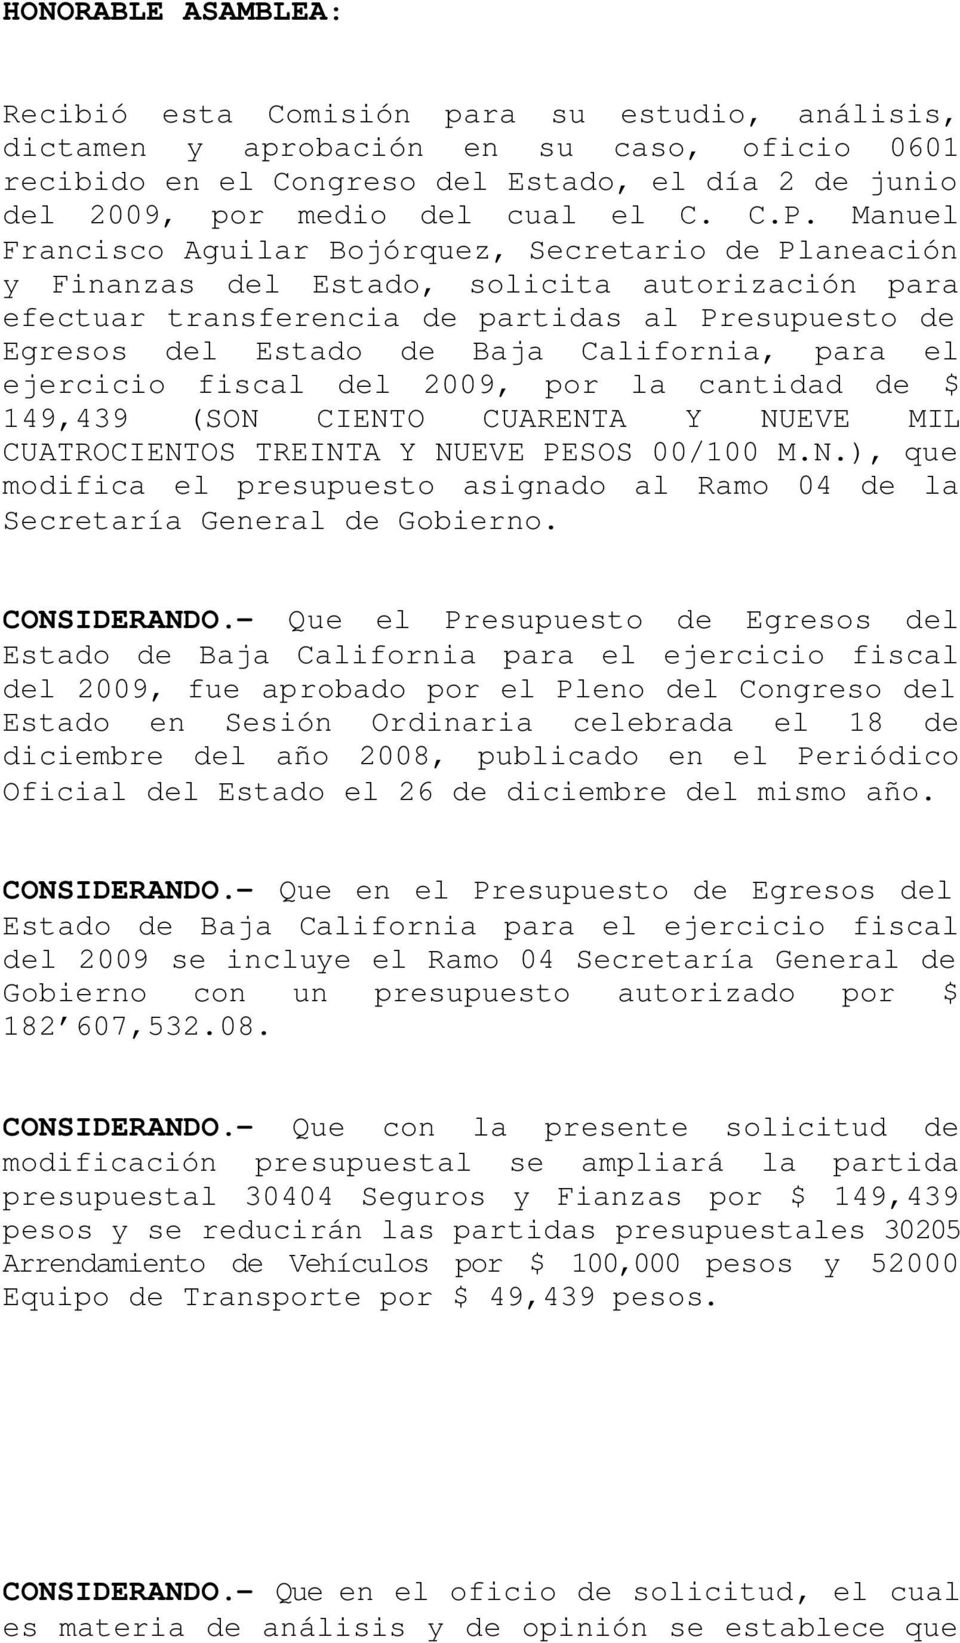 Manuel Francisco Aguilar Bojórquez, Secretario de Planeación y Finanzas del Estado, solicita autorización para efectuar transferencia de partidas al Presupuesto de Egresos del Estado de Baja